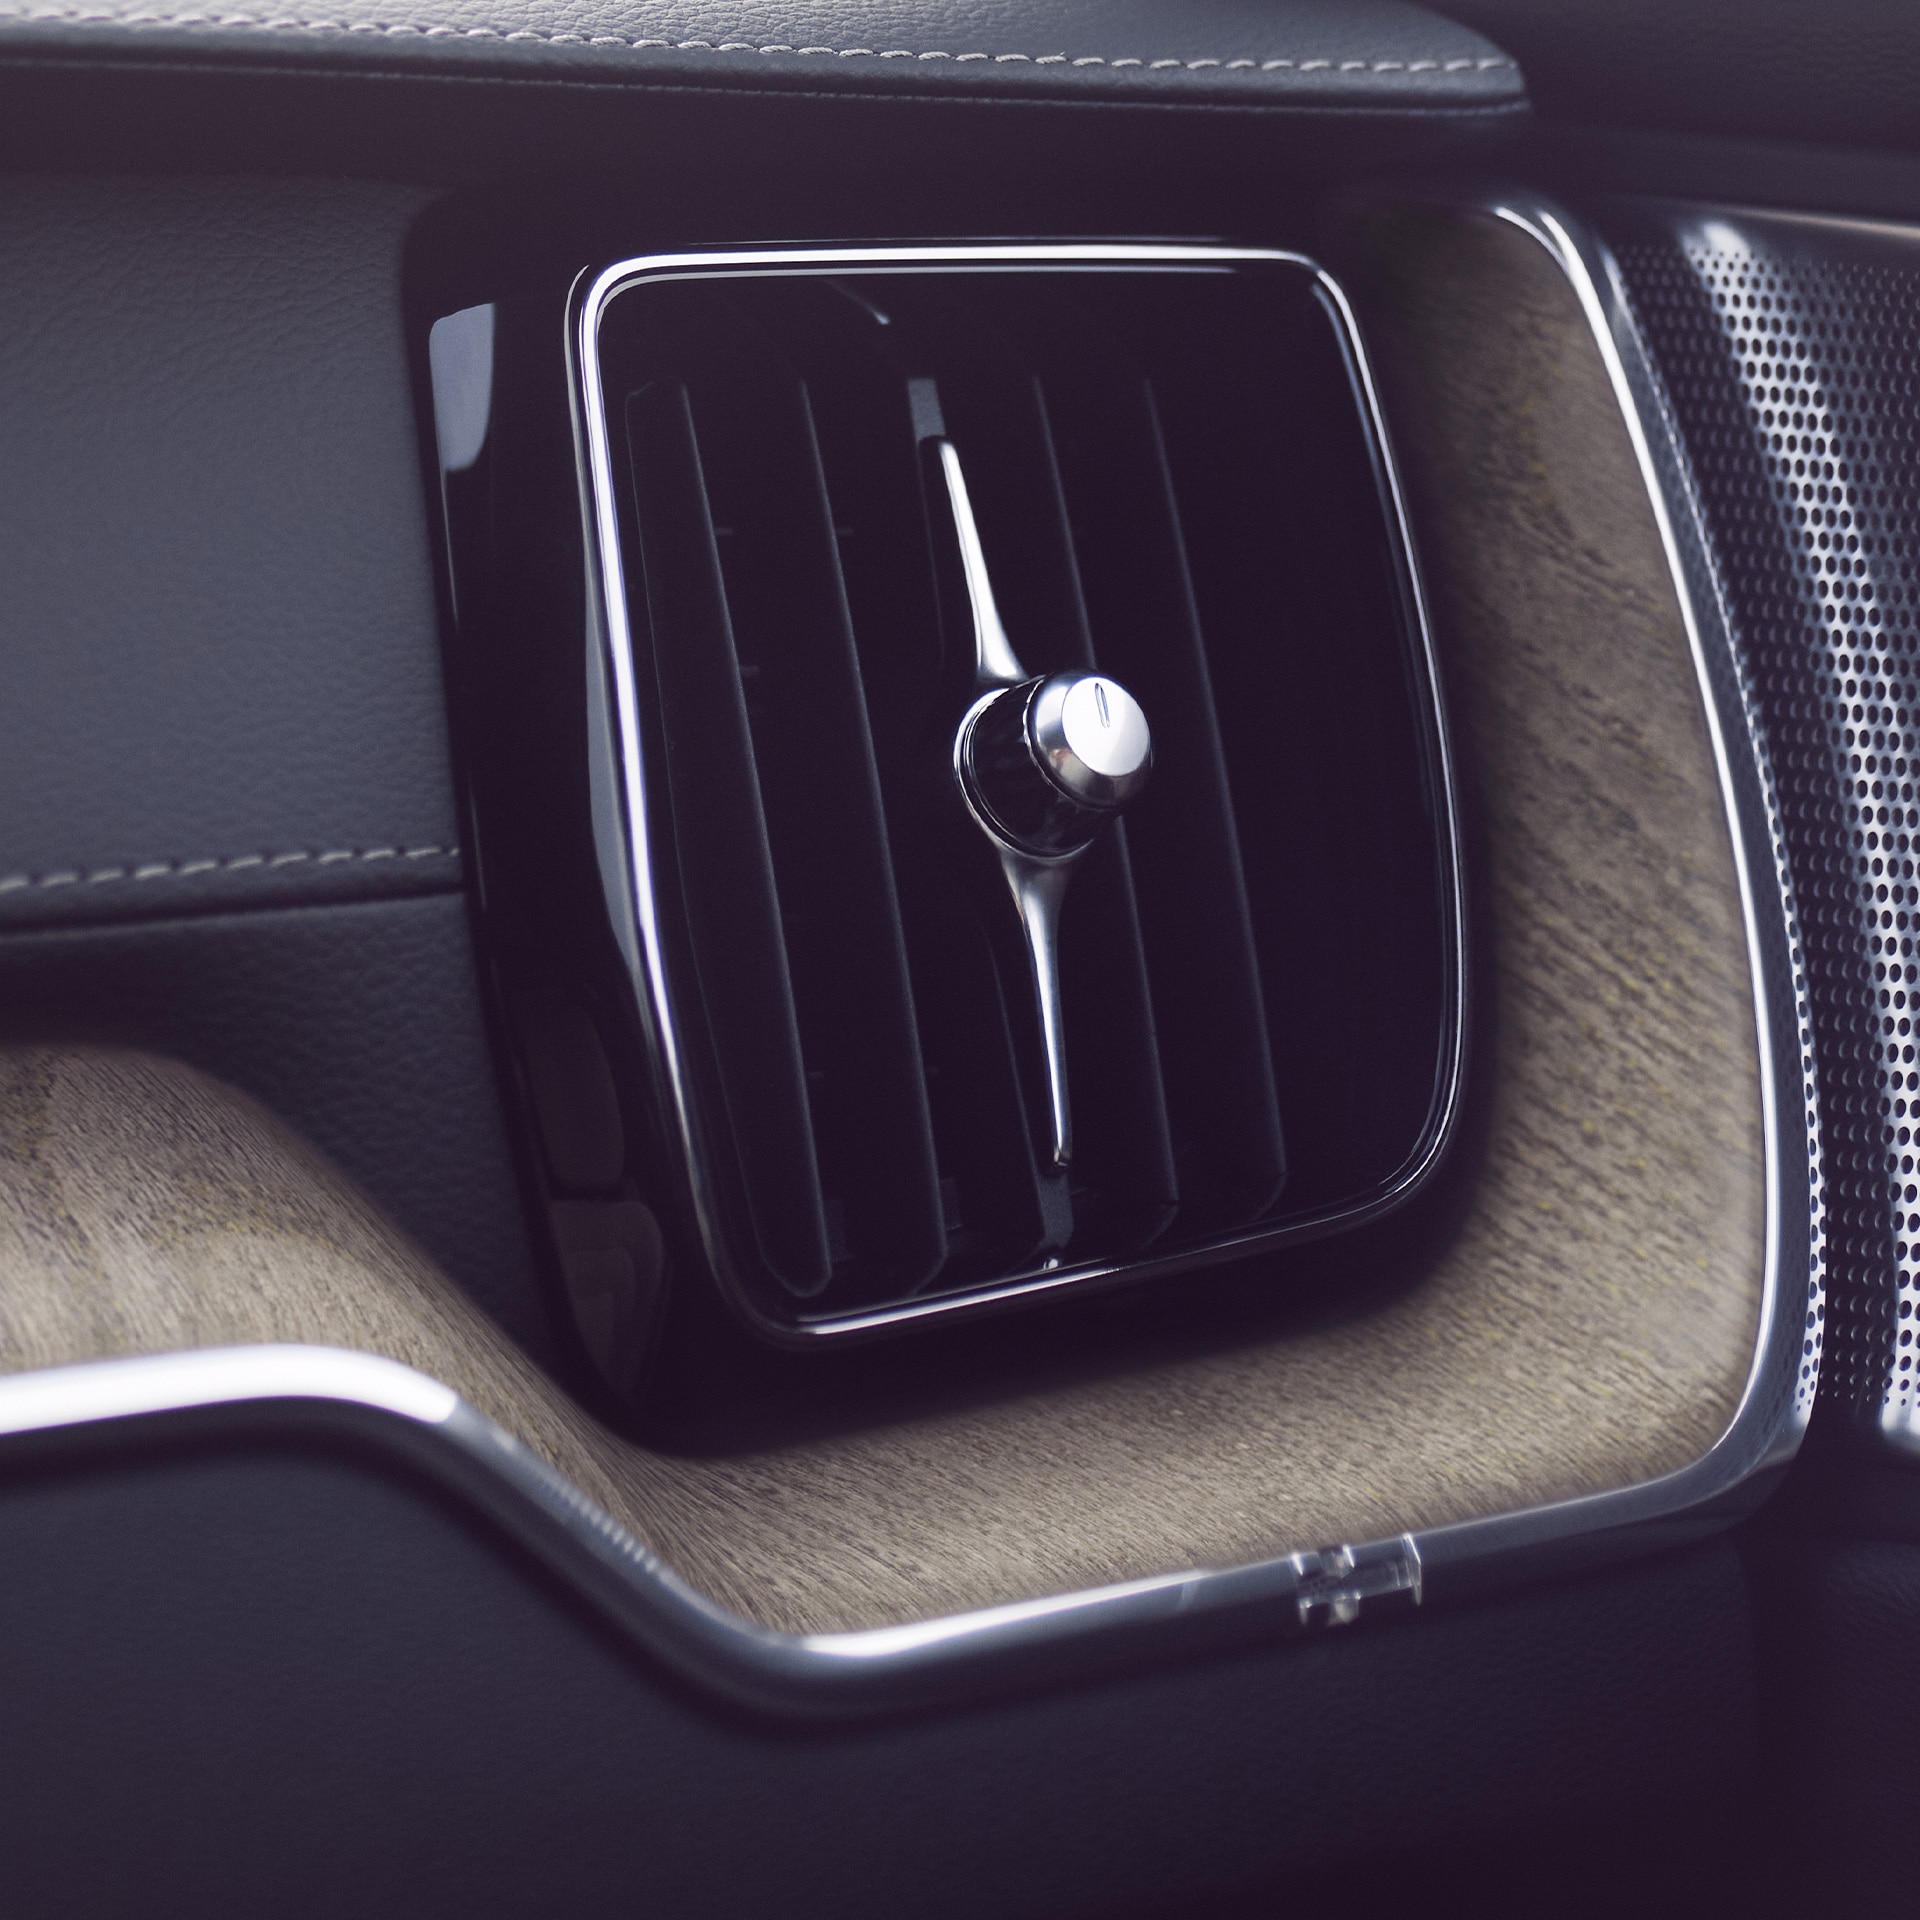 Napredni čistilnik zraka v vozilu Volvo XC60 pripomore k temu, da s sopotniki uživate v kakovostnejšem in bolj zdravem zraku.